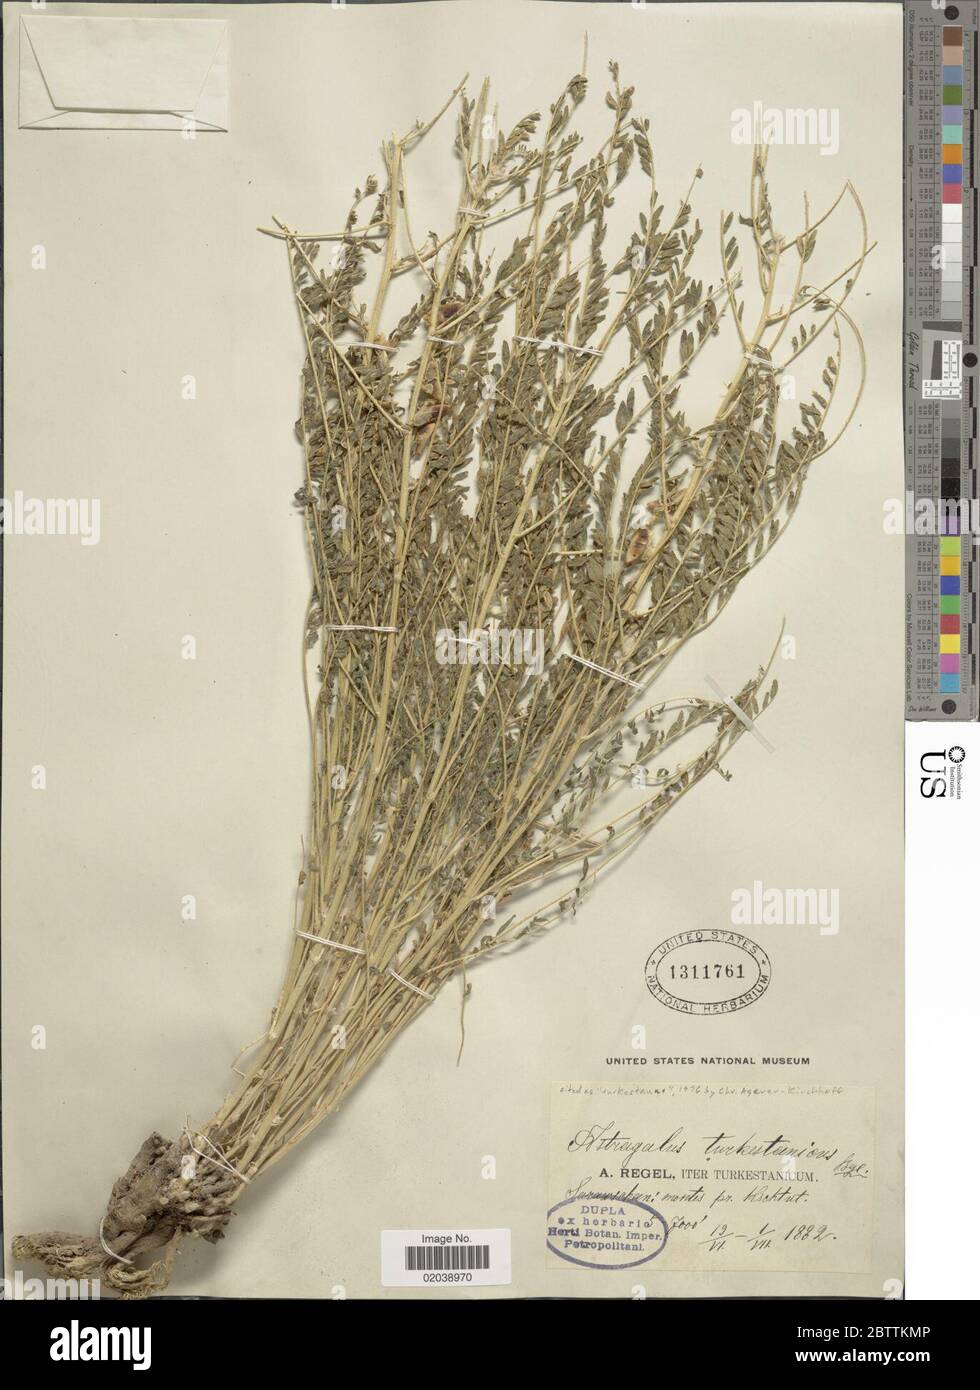 Astragalus turkestanus Bunge Boiss. 28 Dec 20171 Stock Photo